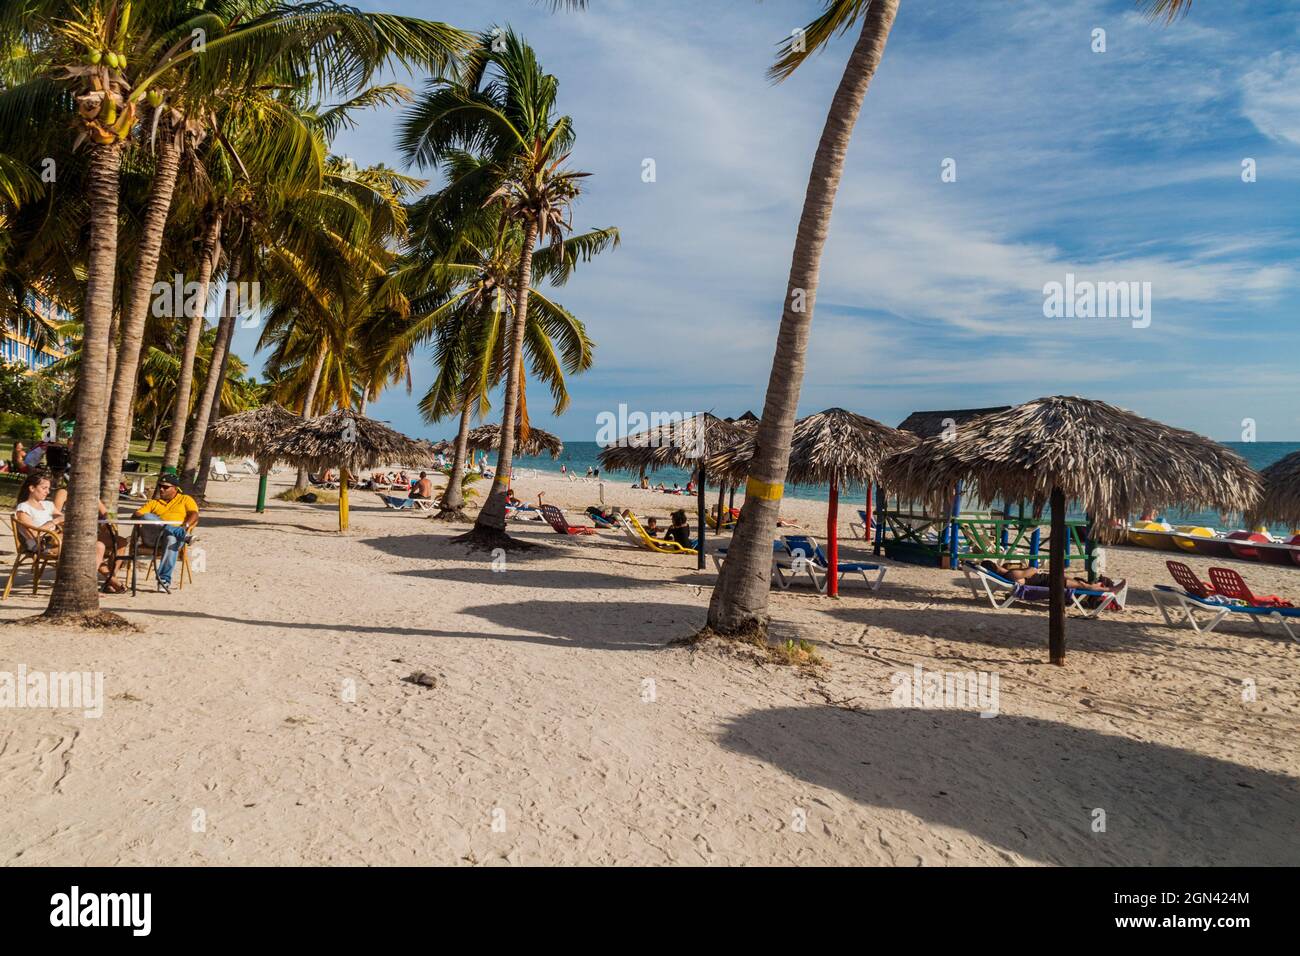 PLAYA ANCON, CUBA - 9 FÉVRIER 2016 : les touristes se baignent au soleil sur la plage Playa Ancon près de Trinidad, Cuba Banque D'Images